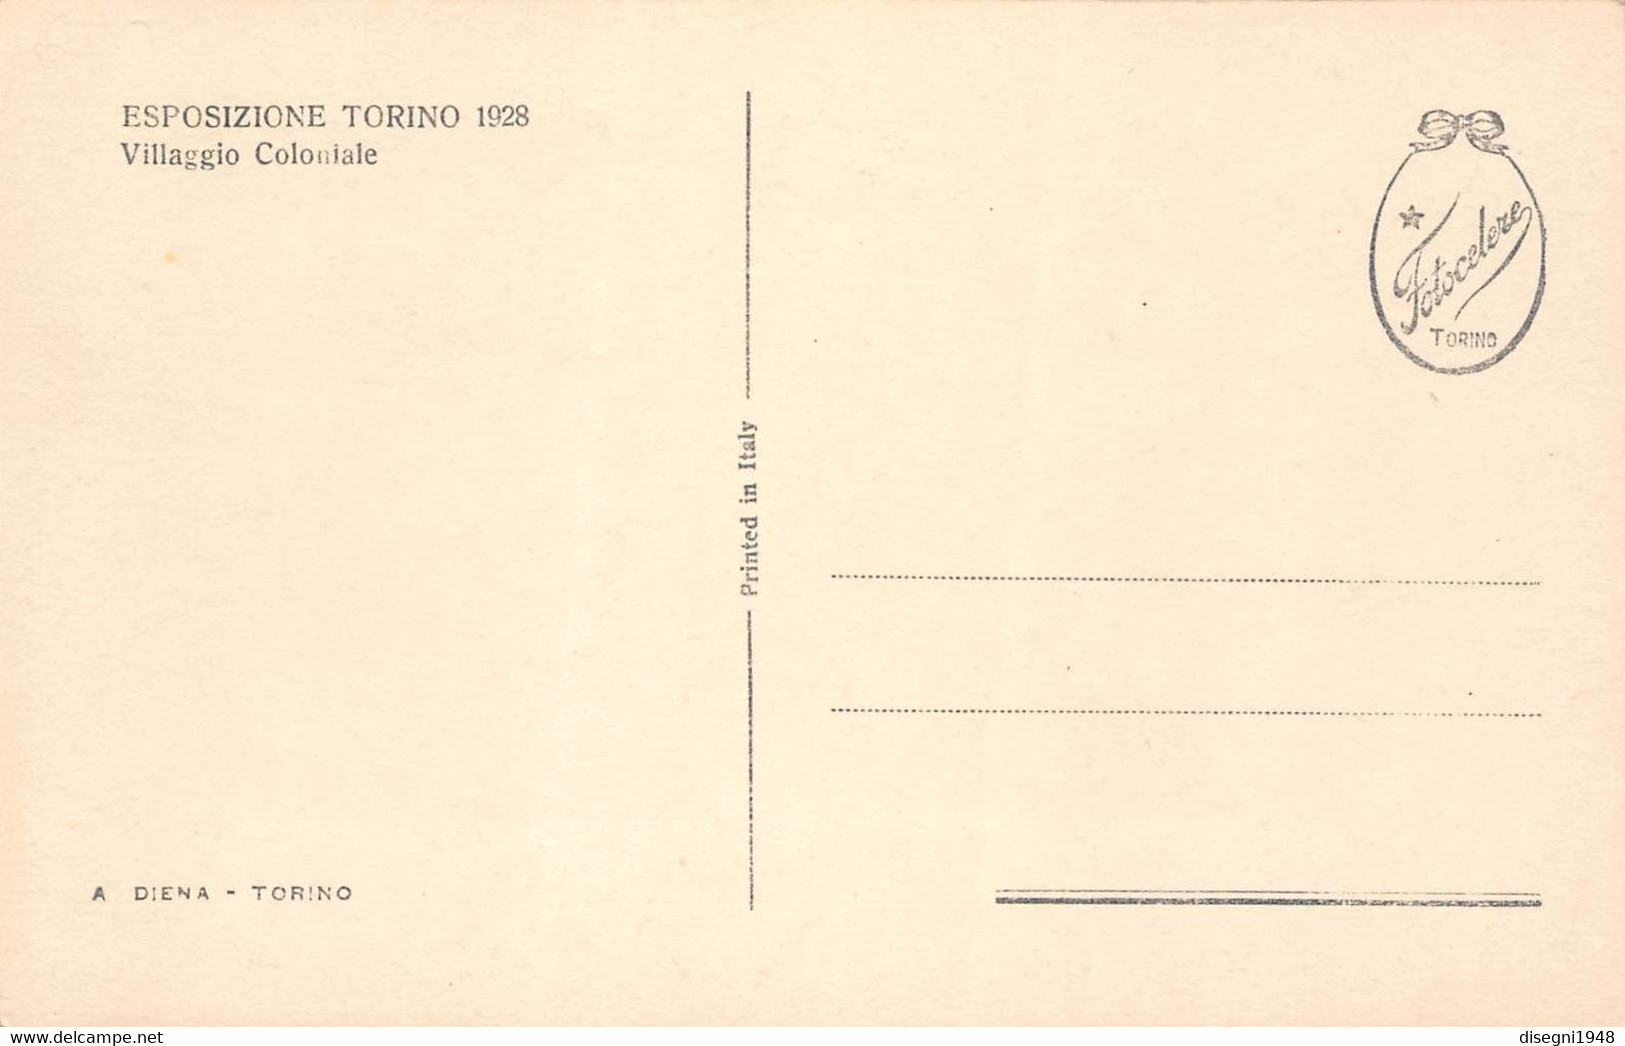 09887 "ESPOSIZIONE TORINO 1928 - VILLAGGIO COLONIALE" ARCHITETT. DEL '900. ANIMATA.CART. ORIG. NON SPED. - Exhibitions